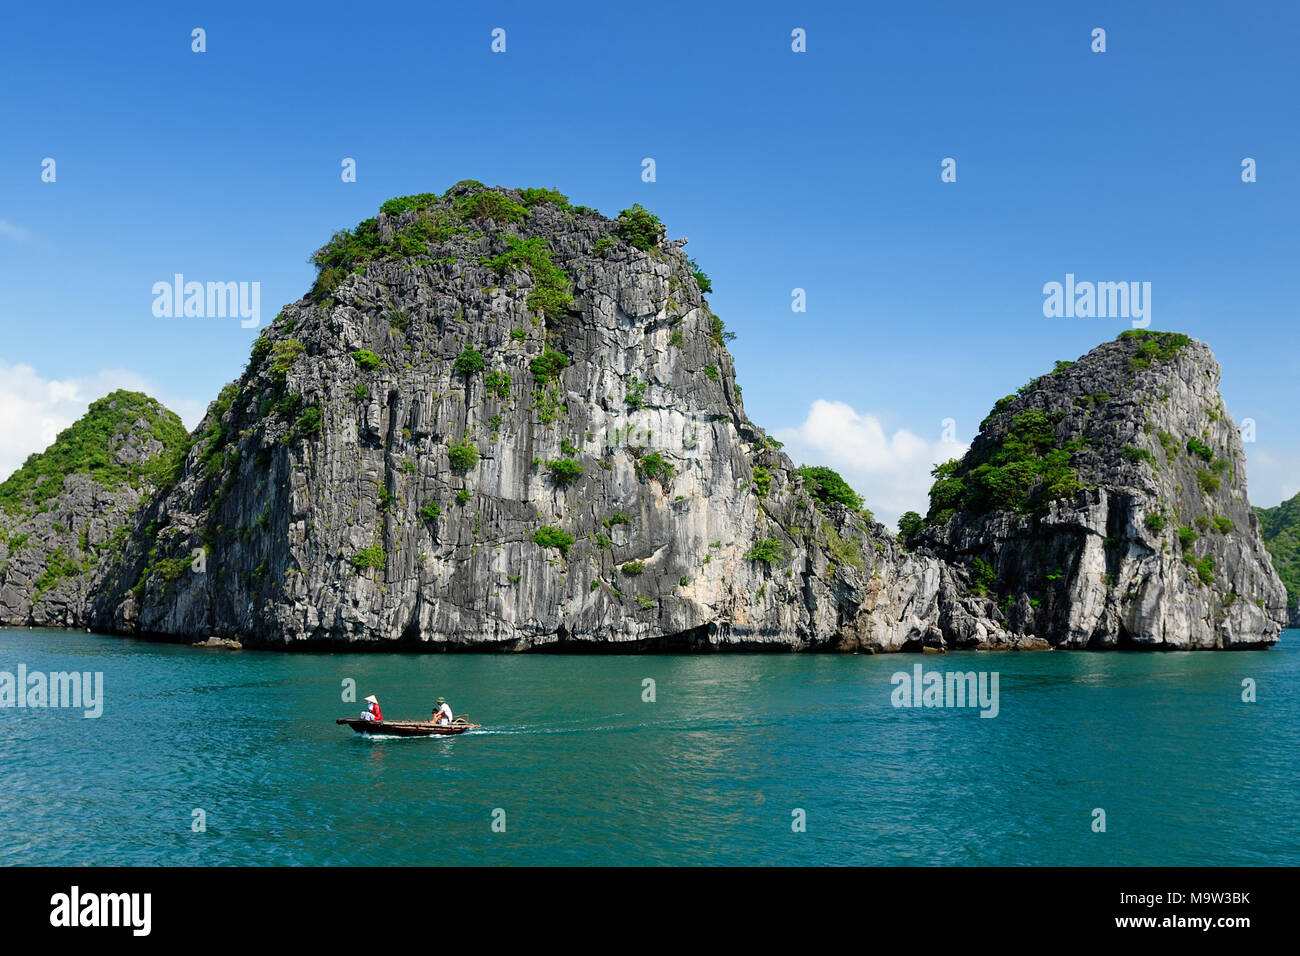 Vietnam - Rock Island dans la baie d'Halong Parc National (UNESCO). La plus belle et la plus célèbre destination touristique du Vietnam Banque D'Images